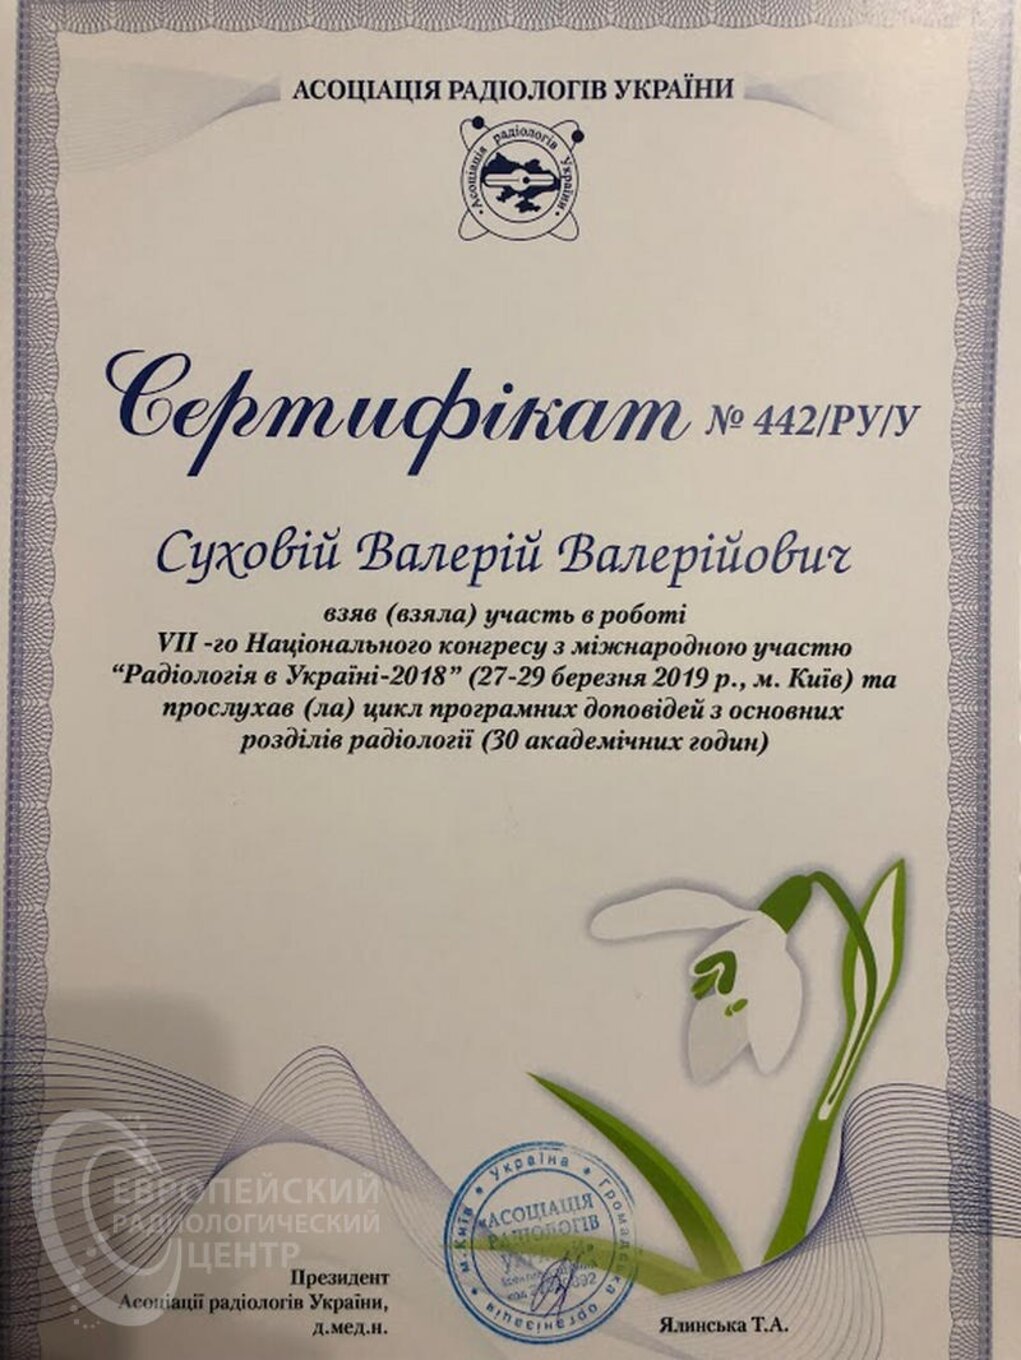 certificates/suhovej-valerij-valerijovich/erc-suhovej-certificates-06.jpg